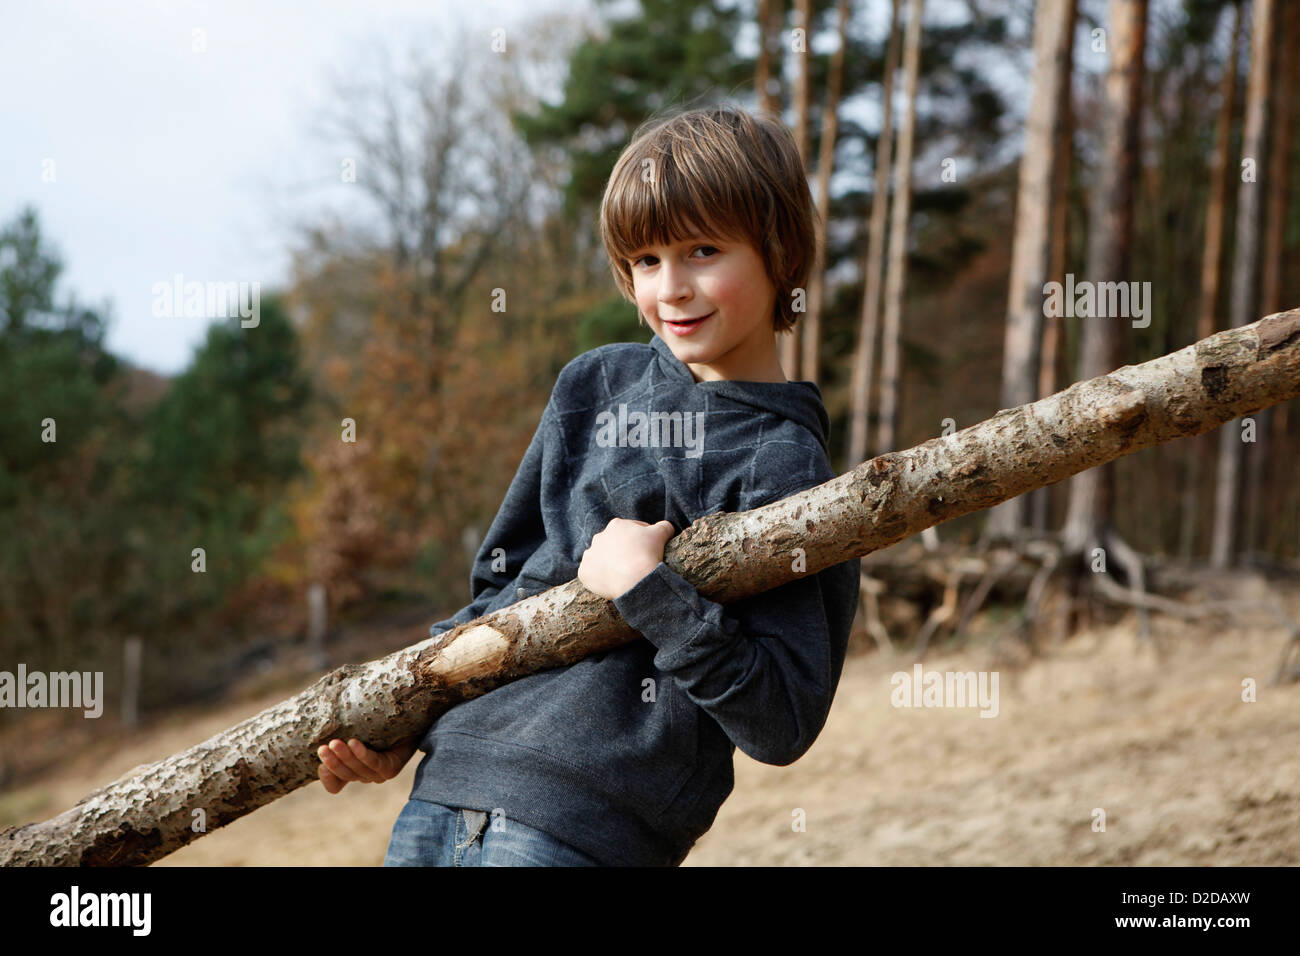 Un garçon porteur d'une grande branche dans une région boisée Banque D'Images